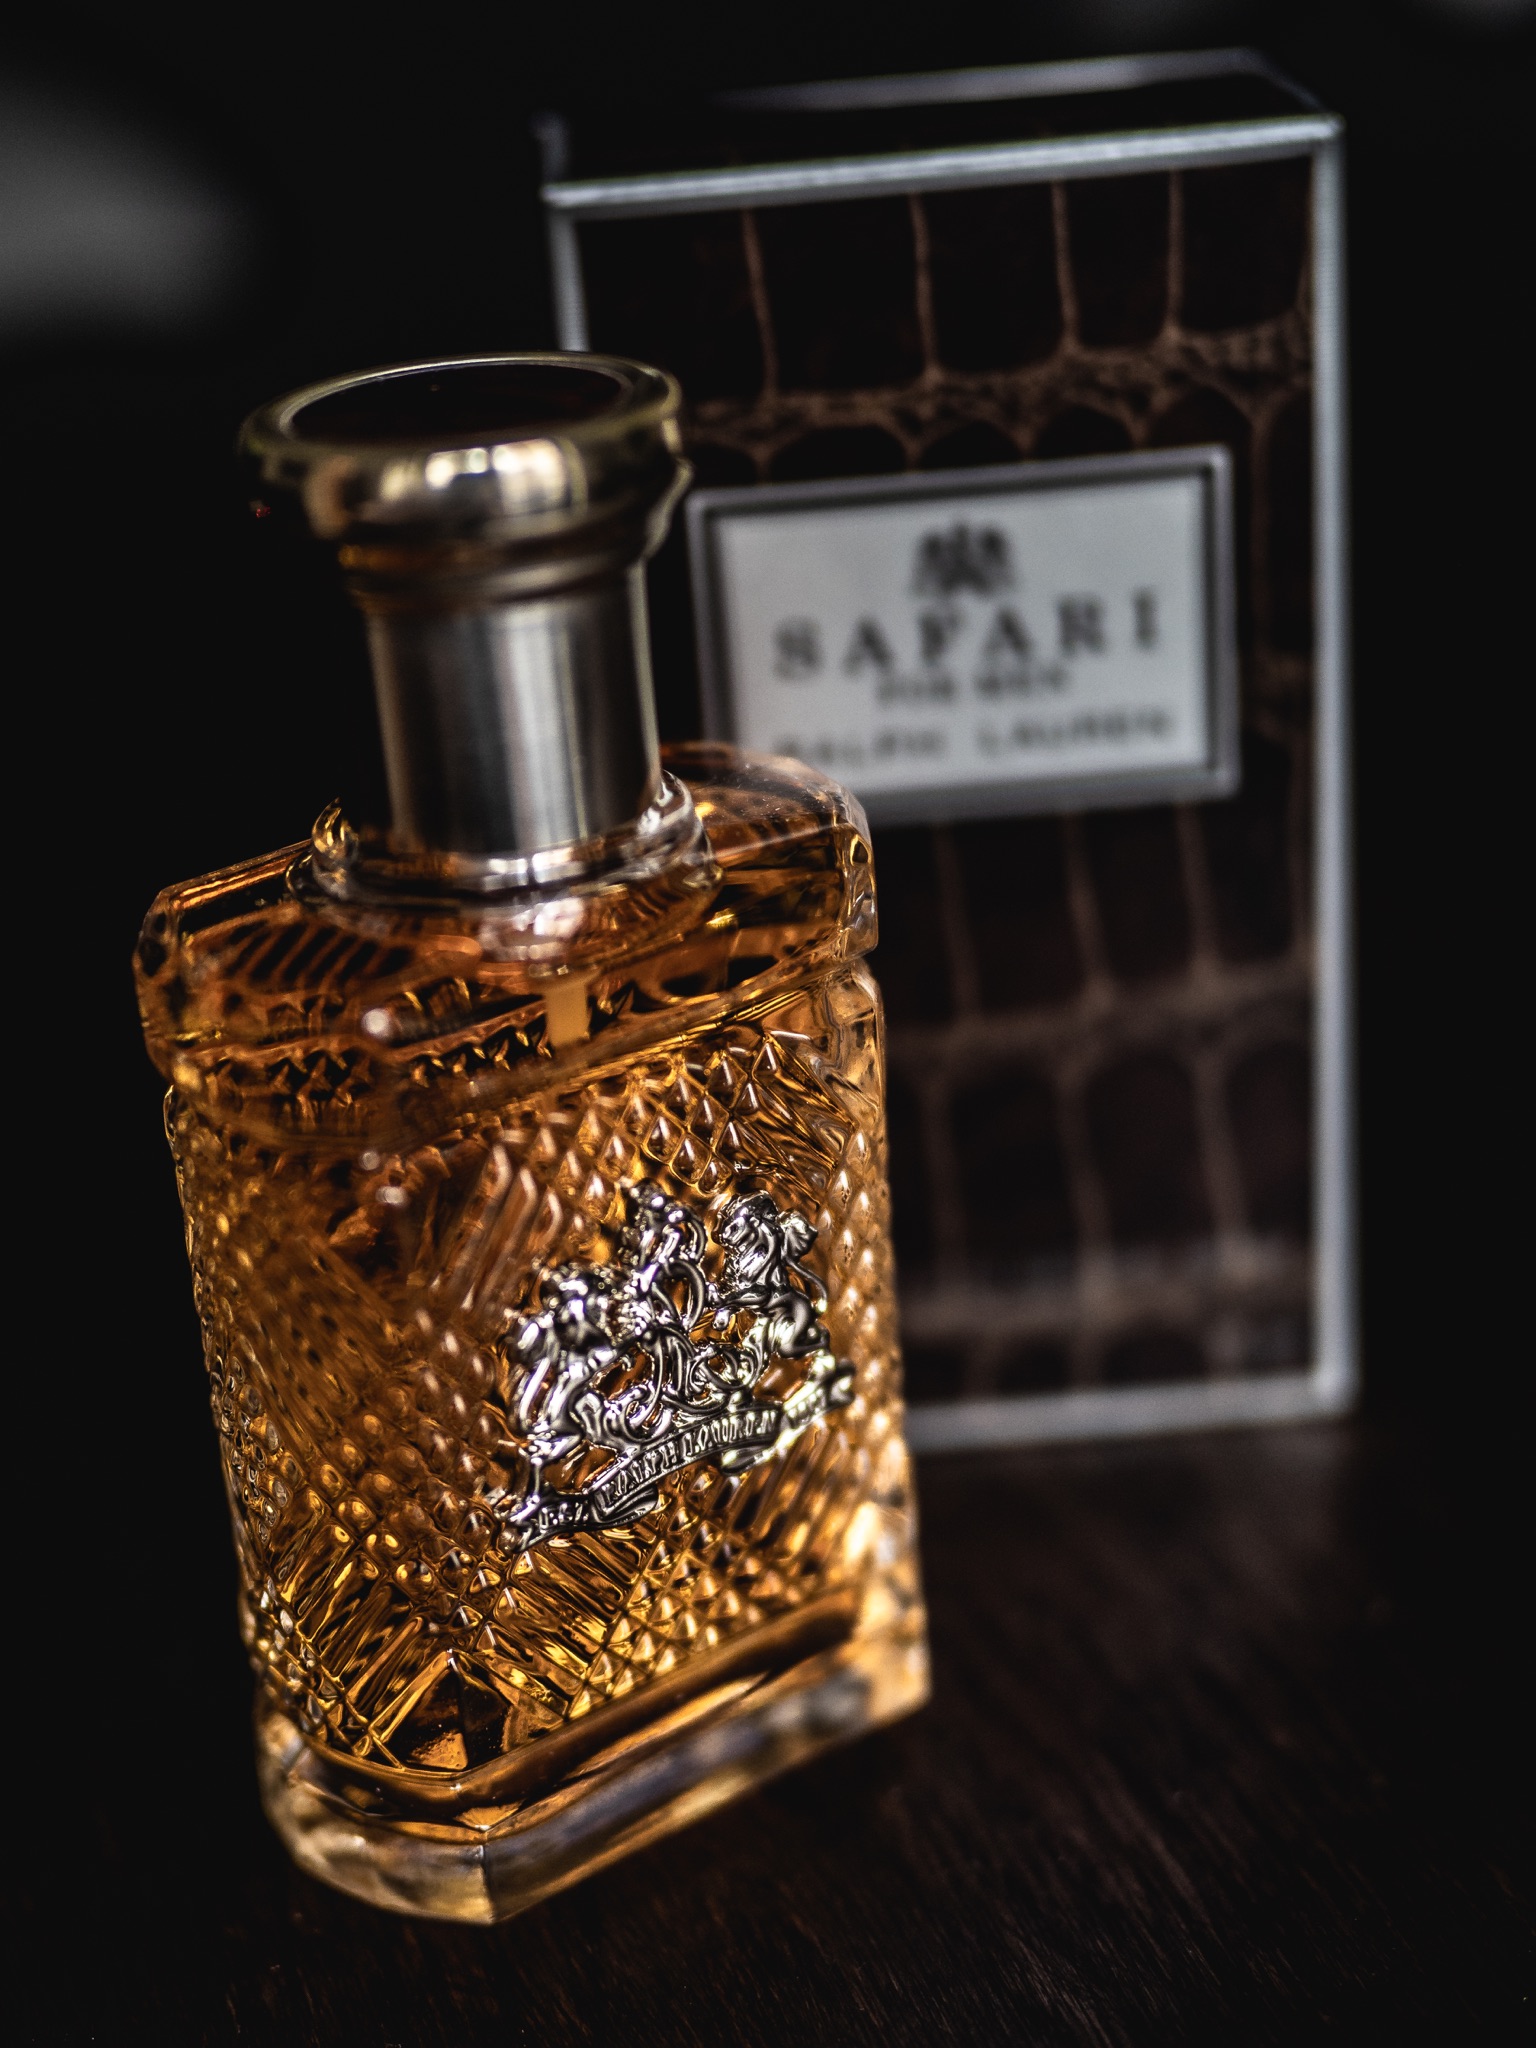 ralph lauren safari perfume review